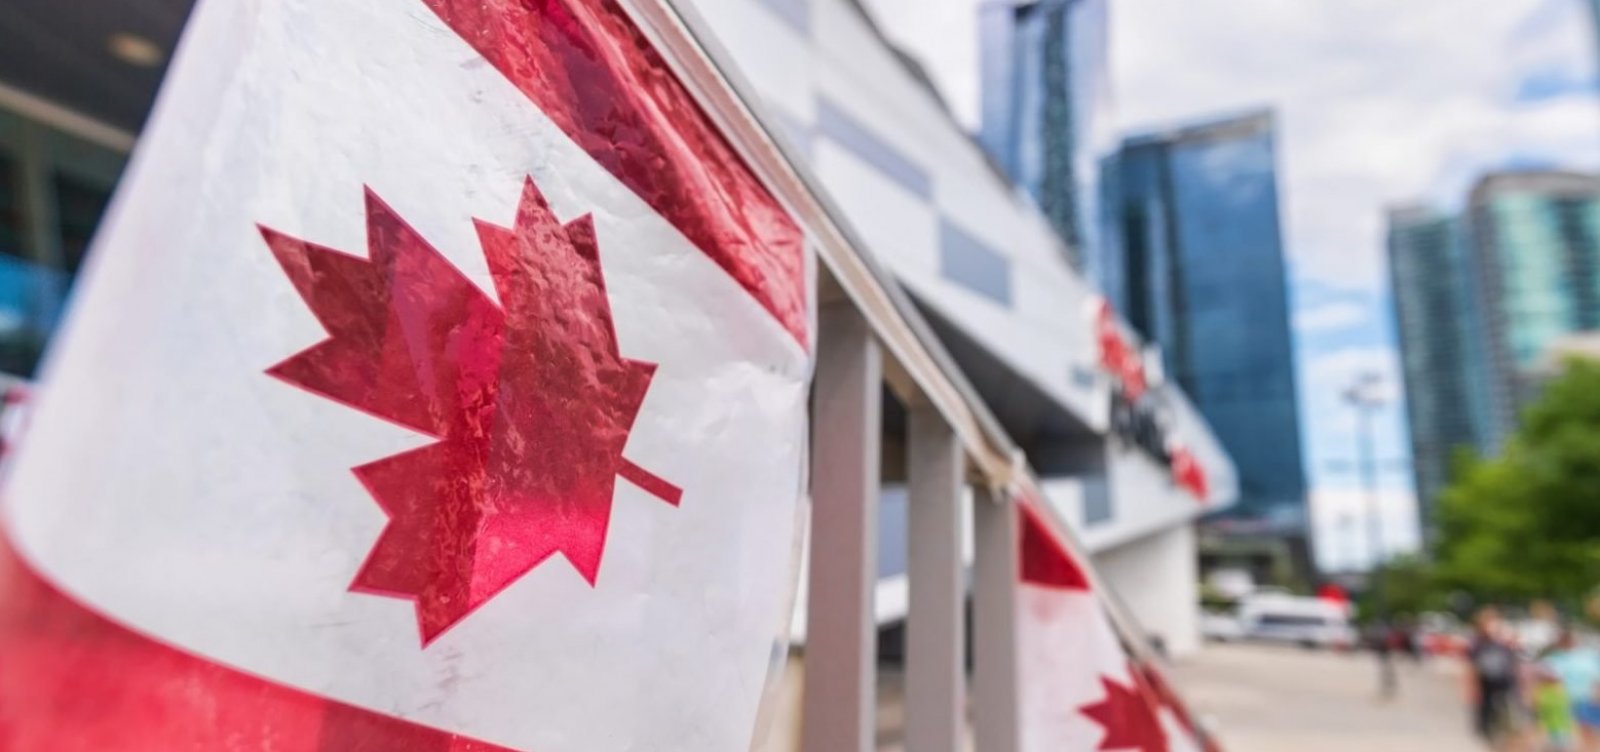 Após legalização, estoques de maconha esgotam no Canadá 